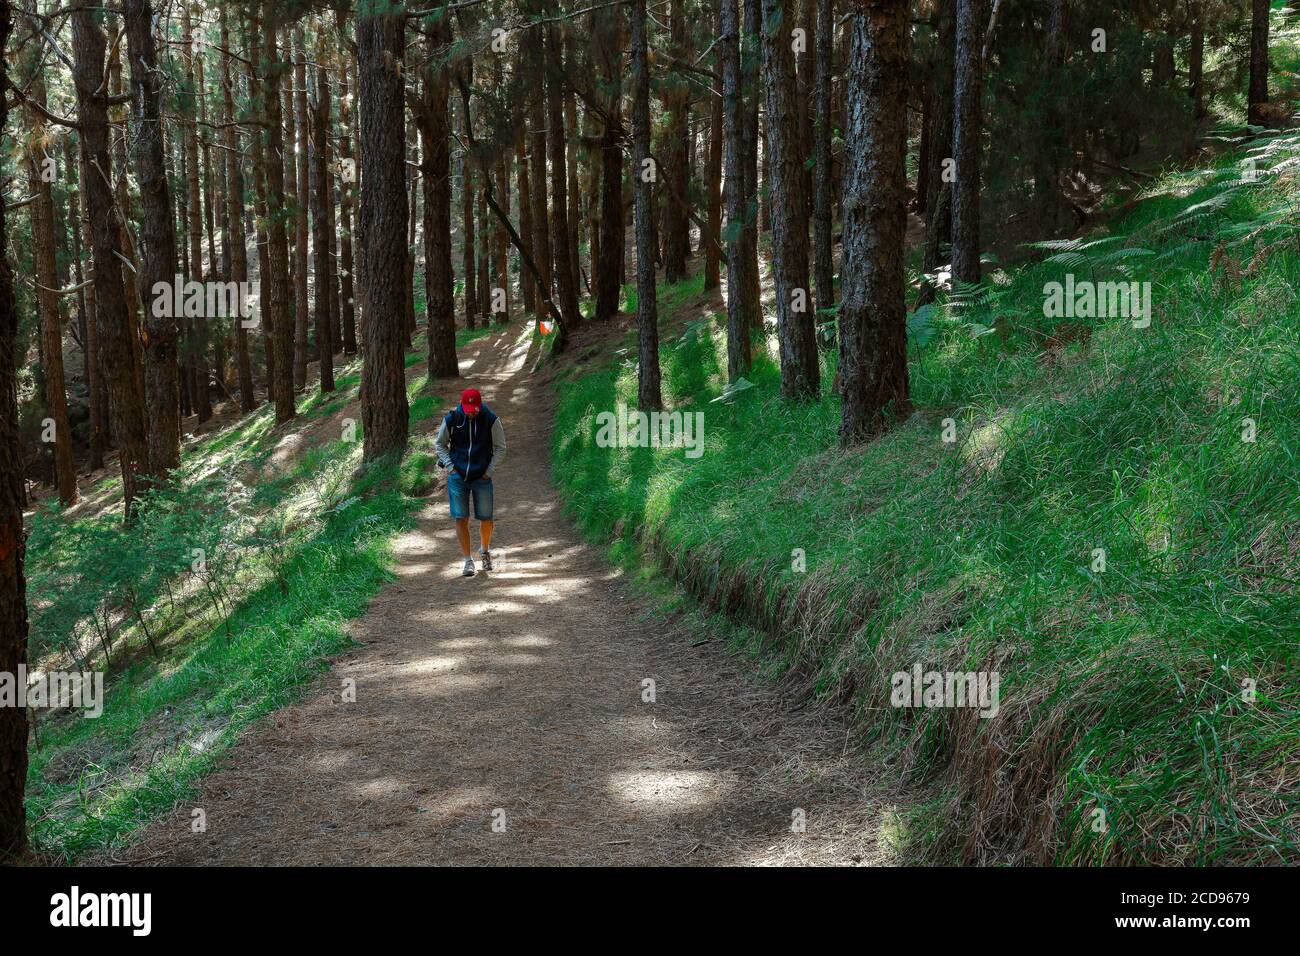 España, Islas Canarias, la Palma, hiker en un sendero en medio de un bosque de coníferas Foto de stock